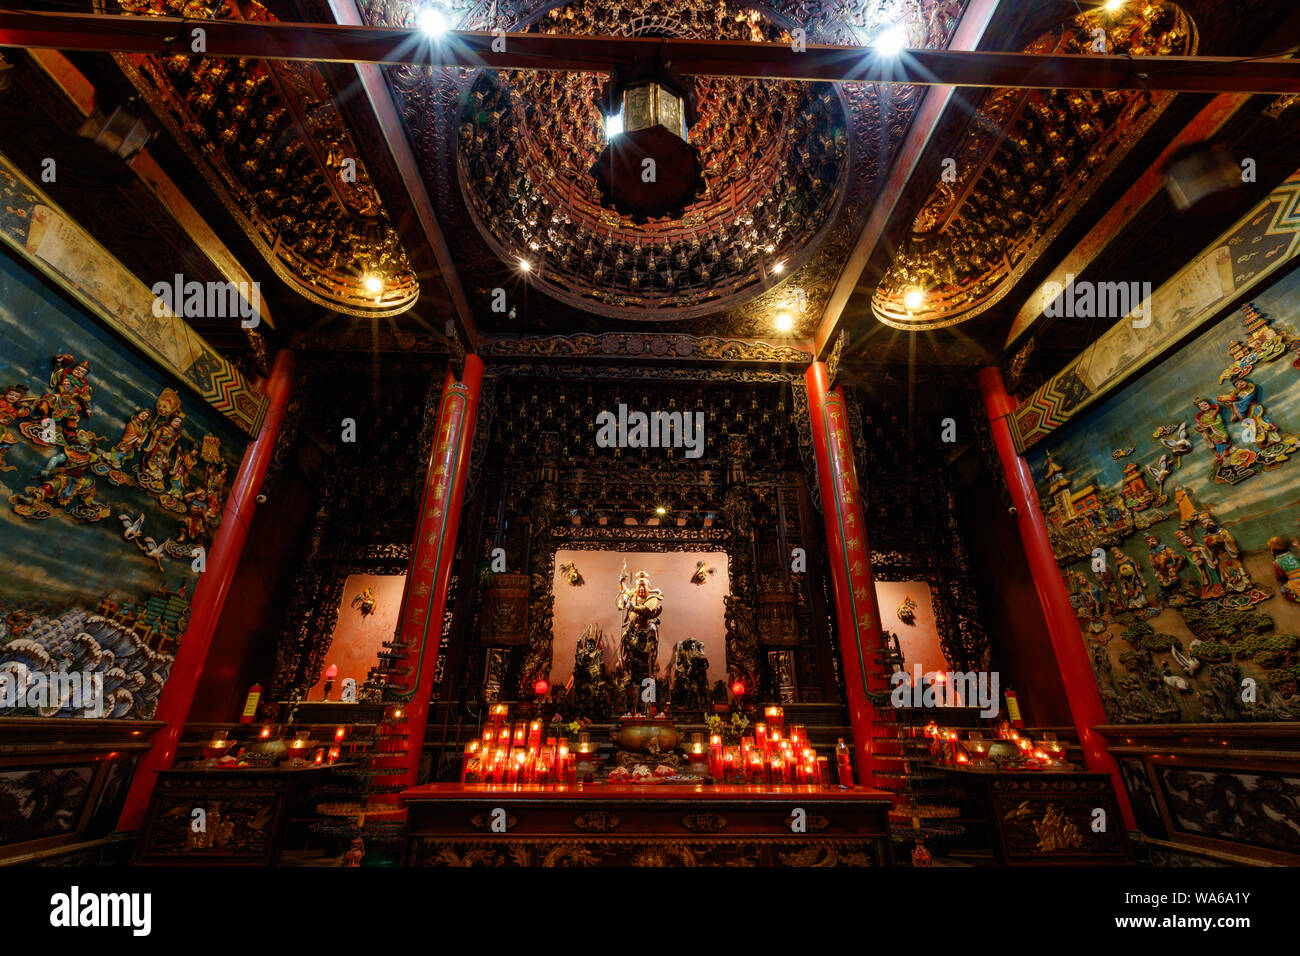 Innenraum des Vihara Satya Dharma, chinesischen buddhistischen Tempel, ehrt Tianhou Mazu, Chinesischen Meer Göttin. Tanjung Benoa, Bali, Indonesien. Nacht. Stockfoto